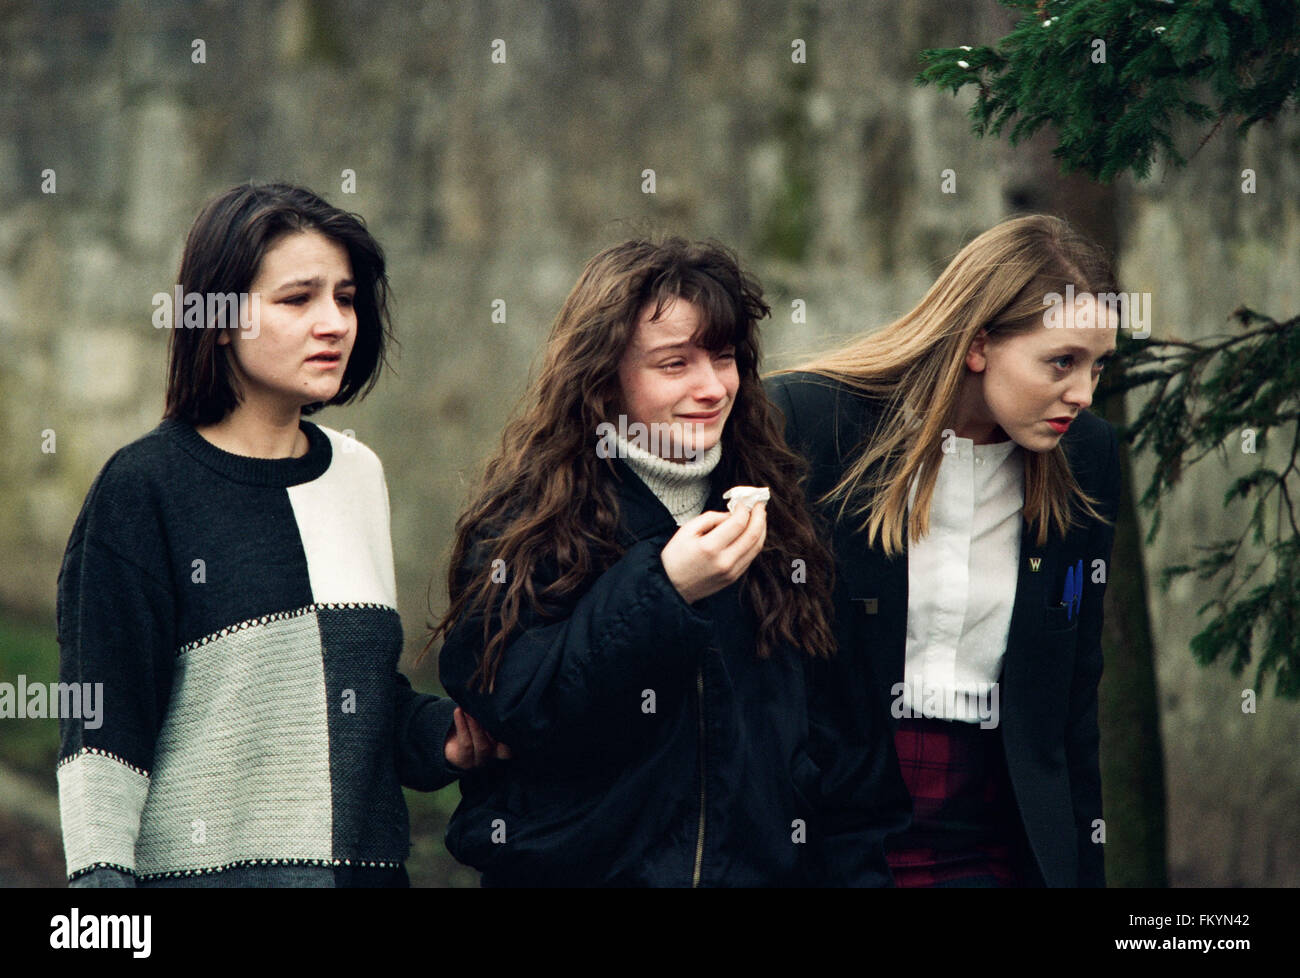 Drei junge Mädchen, Weinen, außerhalb Dunblane Primary School, Schottland, kurz nach der Schießerei auf dem Gelände. Das Massaker von Dunblane Schule war eines der tödlichsten Massenmorde in der britischen Geschichte, als Amokläufer Thomas Hamilton sechzehn Kinder und ein Lehrer in der Dunblane Primary School in der Nähe von Stirling, Schottland am 13. März 1996, vor sich selbst zu töten getötet. Als Folge der Morde wurden zwei neue Feuerwaffen Akten übergeben, wodurch effektiv Privateigentum an Handfeuerwaffen in Großbritannien verboten. Stockfoto